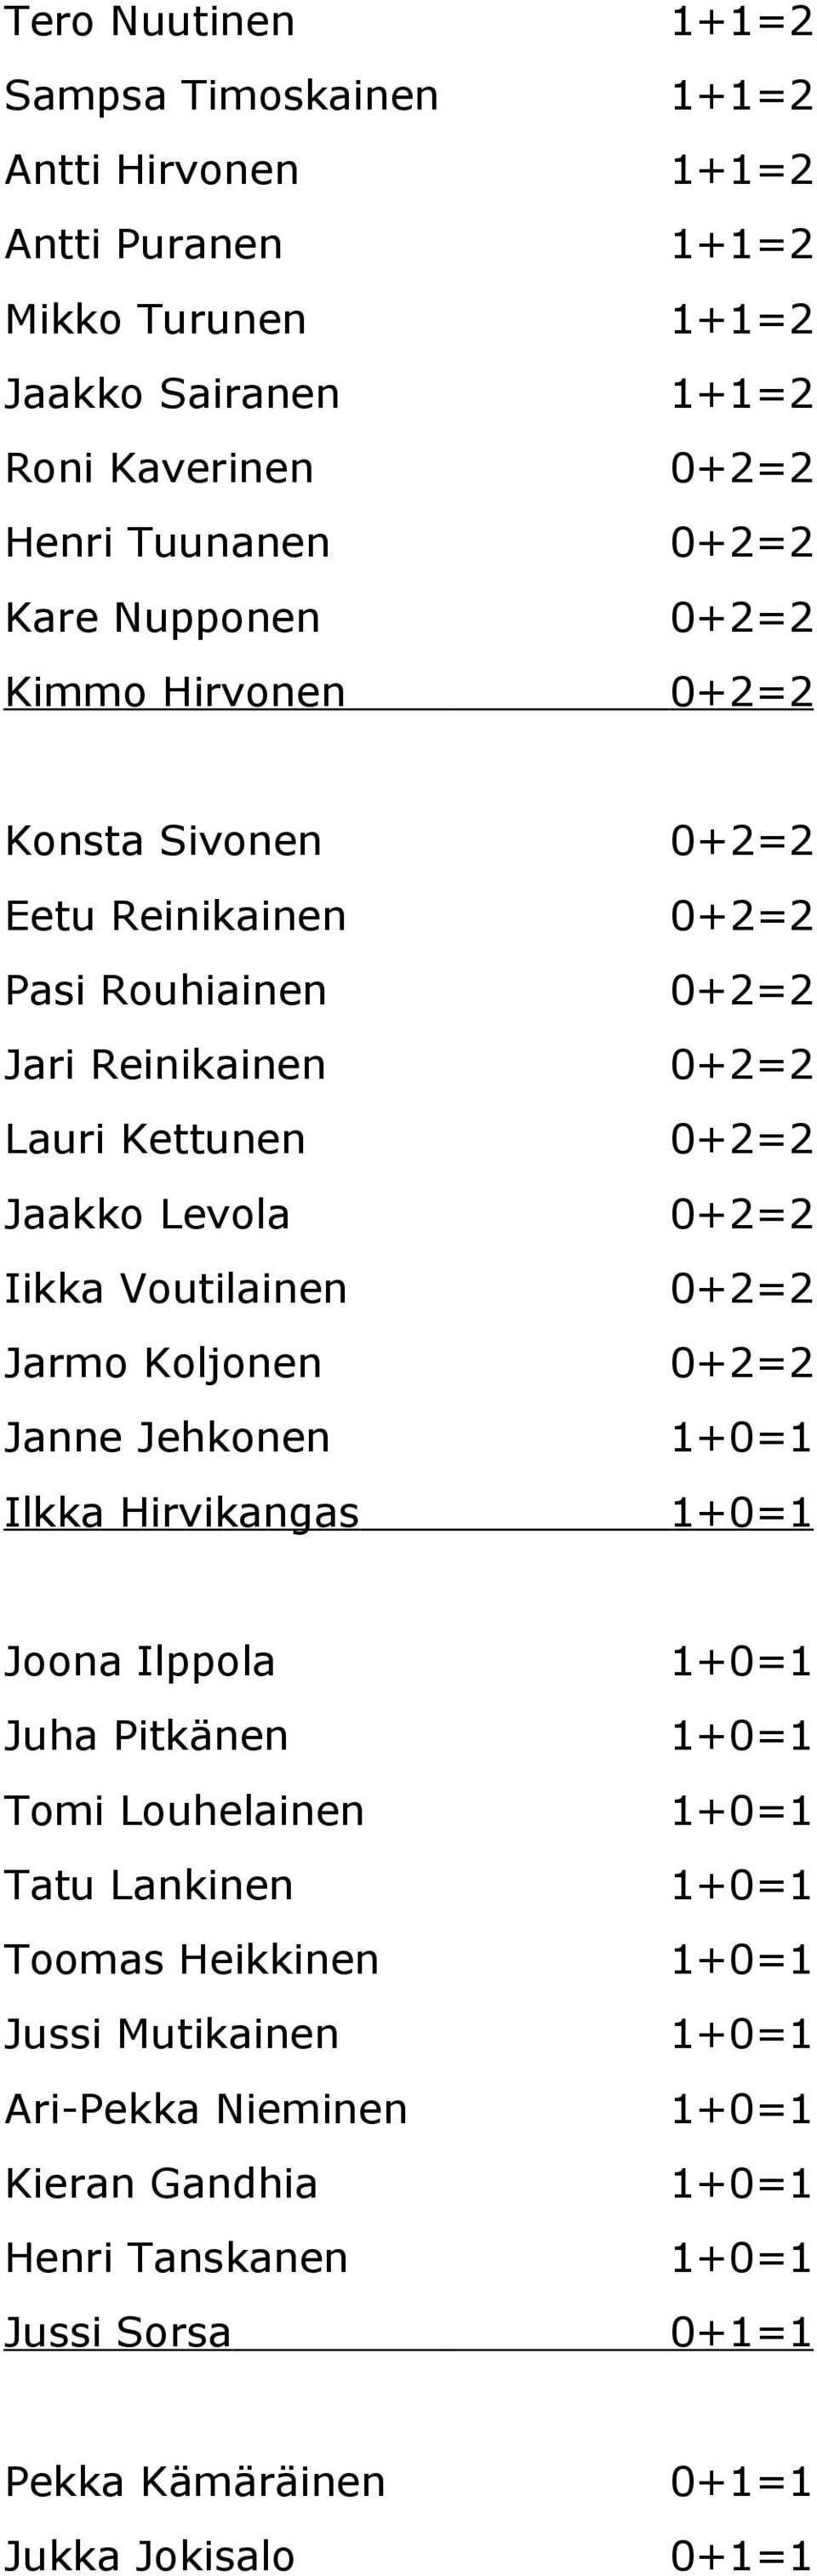 Iikka Voutilainen 0+2=2 Jarmo Koljonen 0+2=2 Janne Jehkonen 1+0=1 Ilkka Hirvikangas 1+0=1 Joona Ilppola 1+0=1 Juha Pitkänen 1+0=1 Tomi Louhelainen 1+0=1 Tatu Lankinen 1+0=1